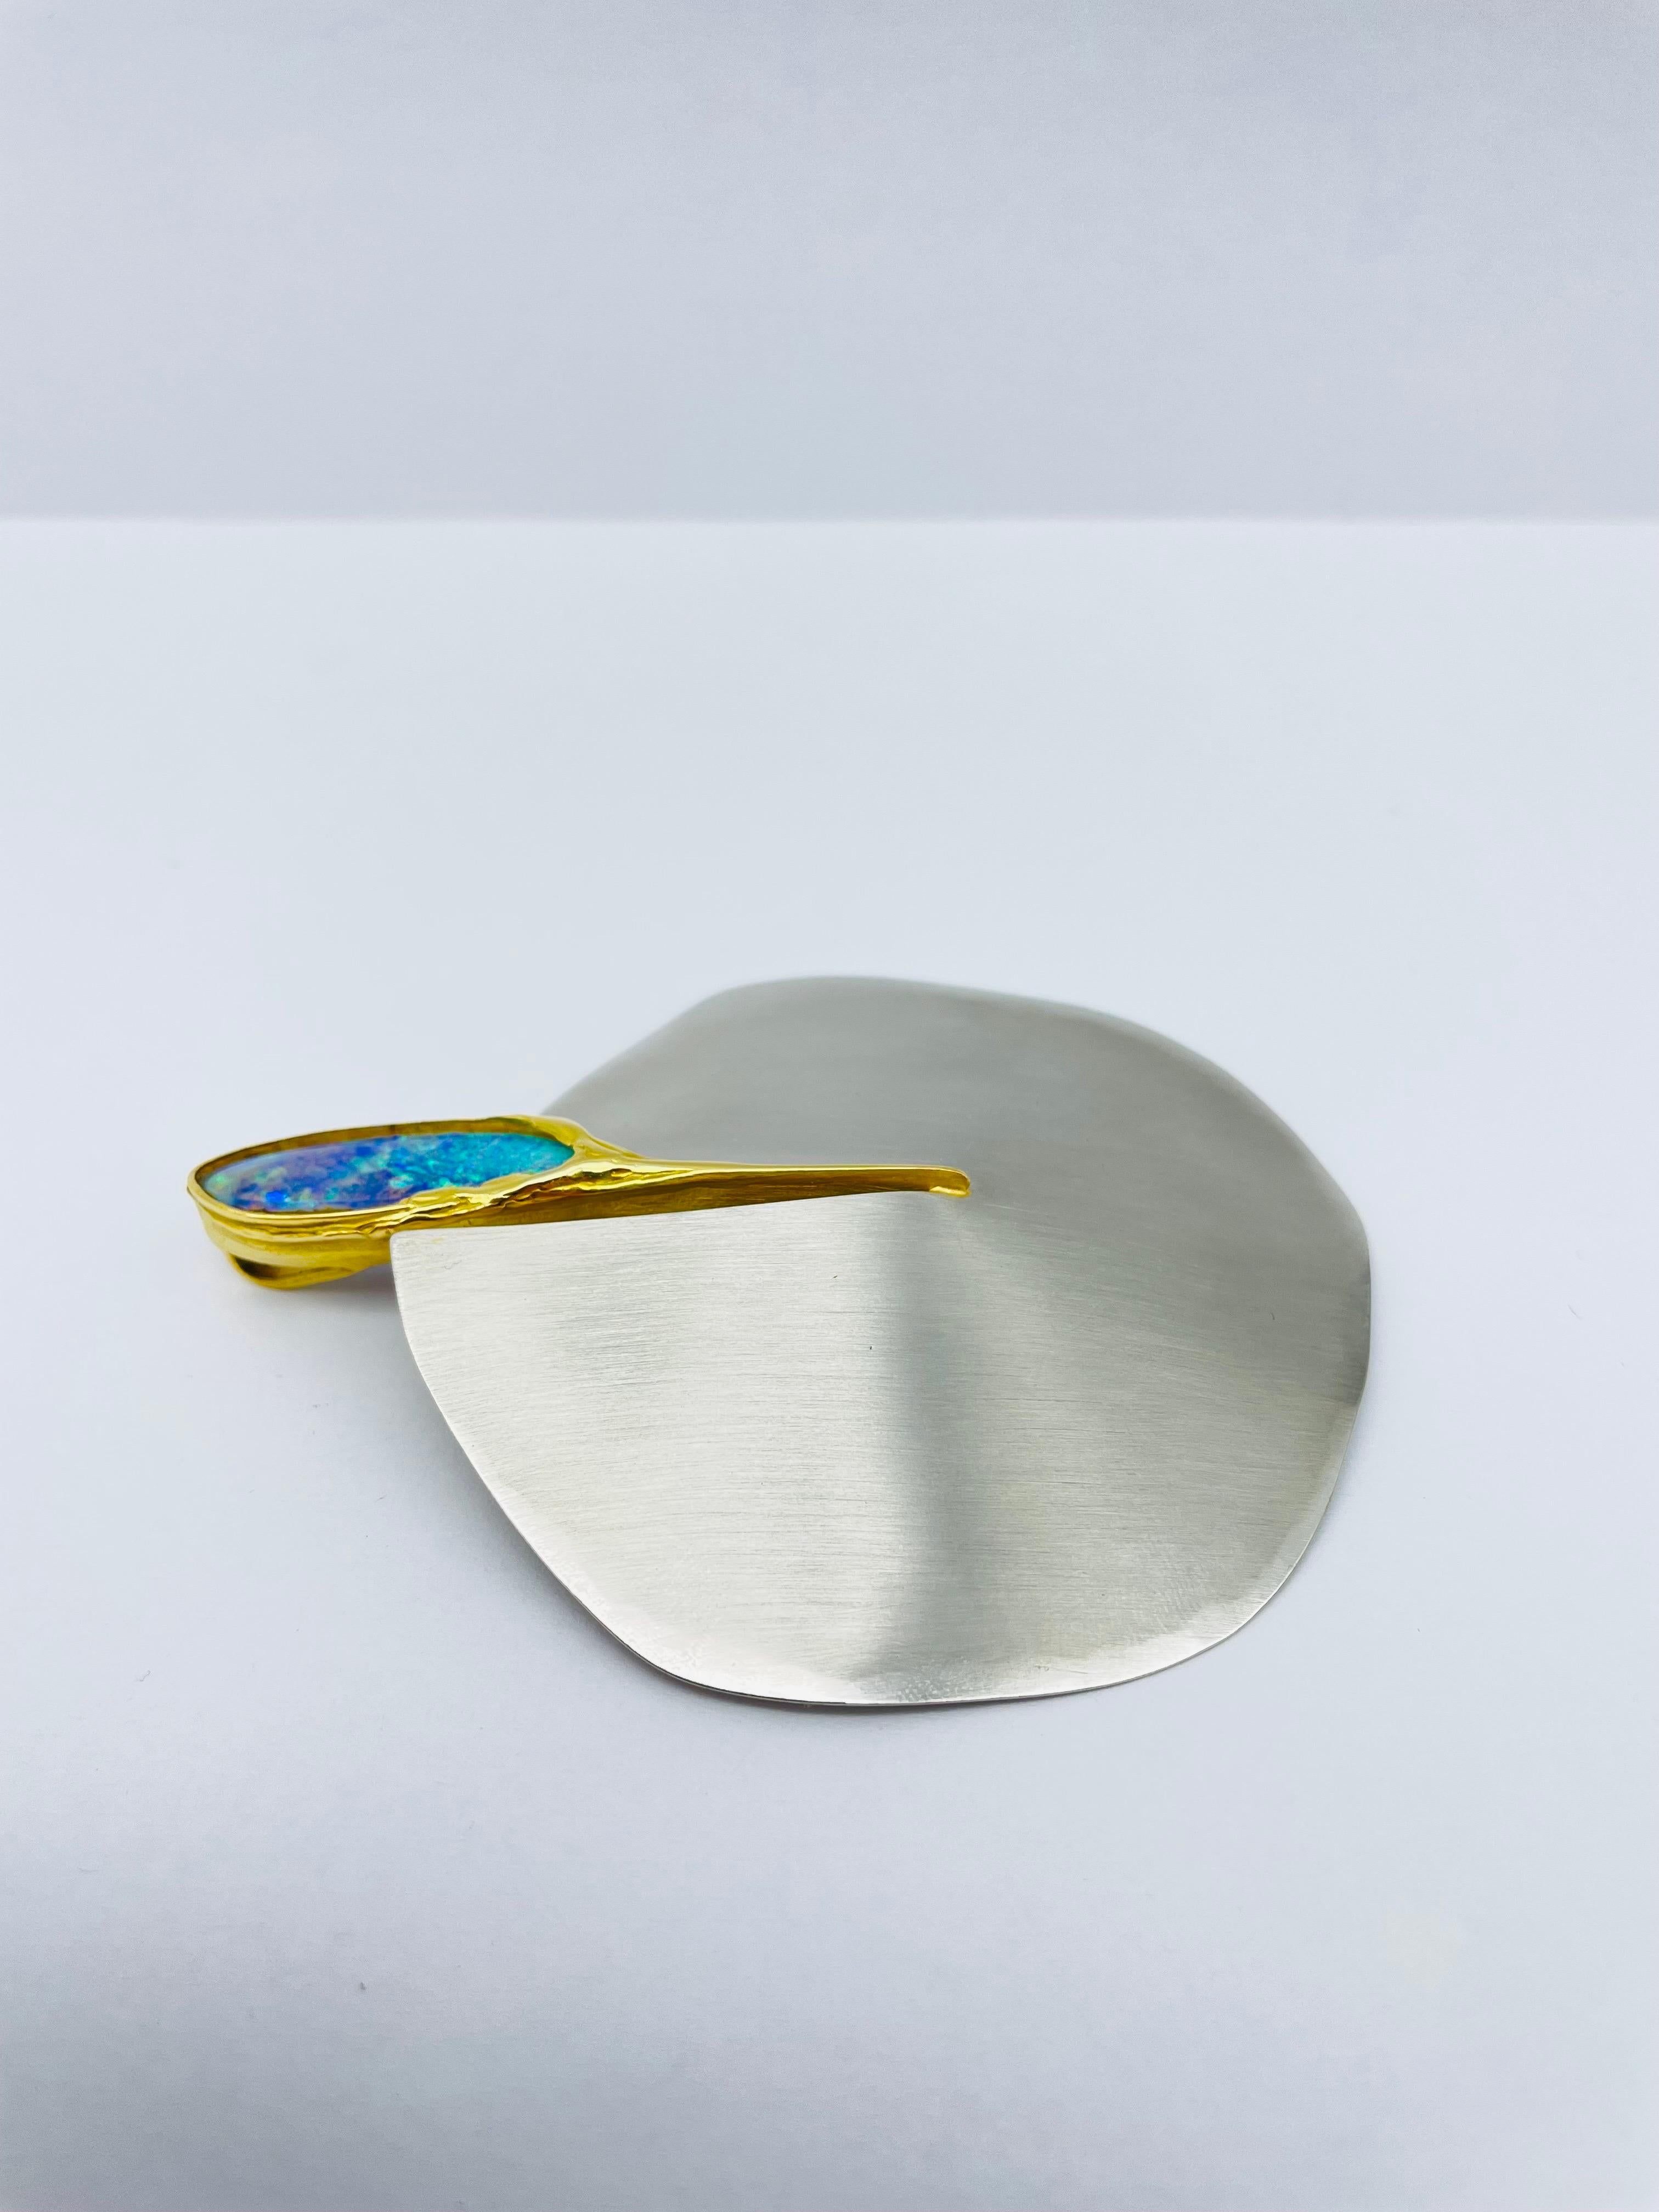 Bicolor Platinum/18k Gold Brooch-Pendant with Australian Opal, Unique For Sale 4